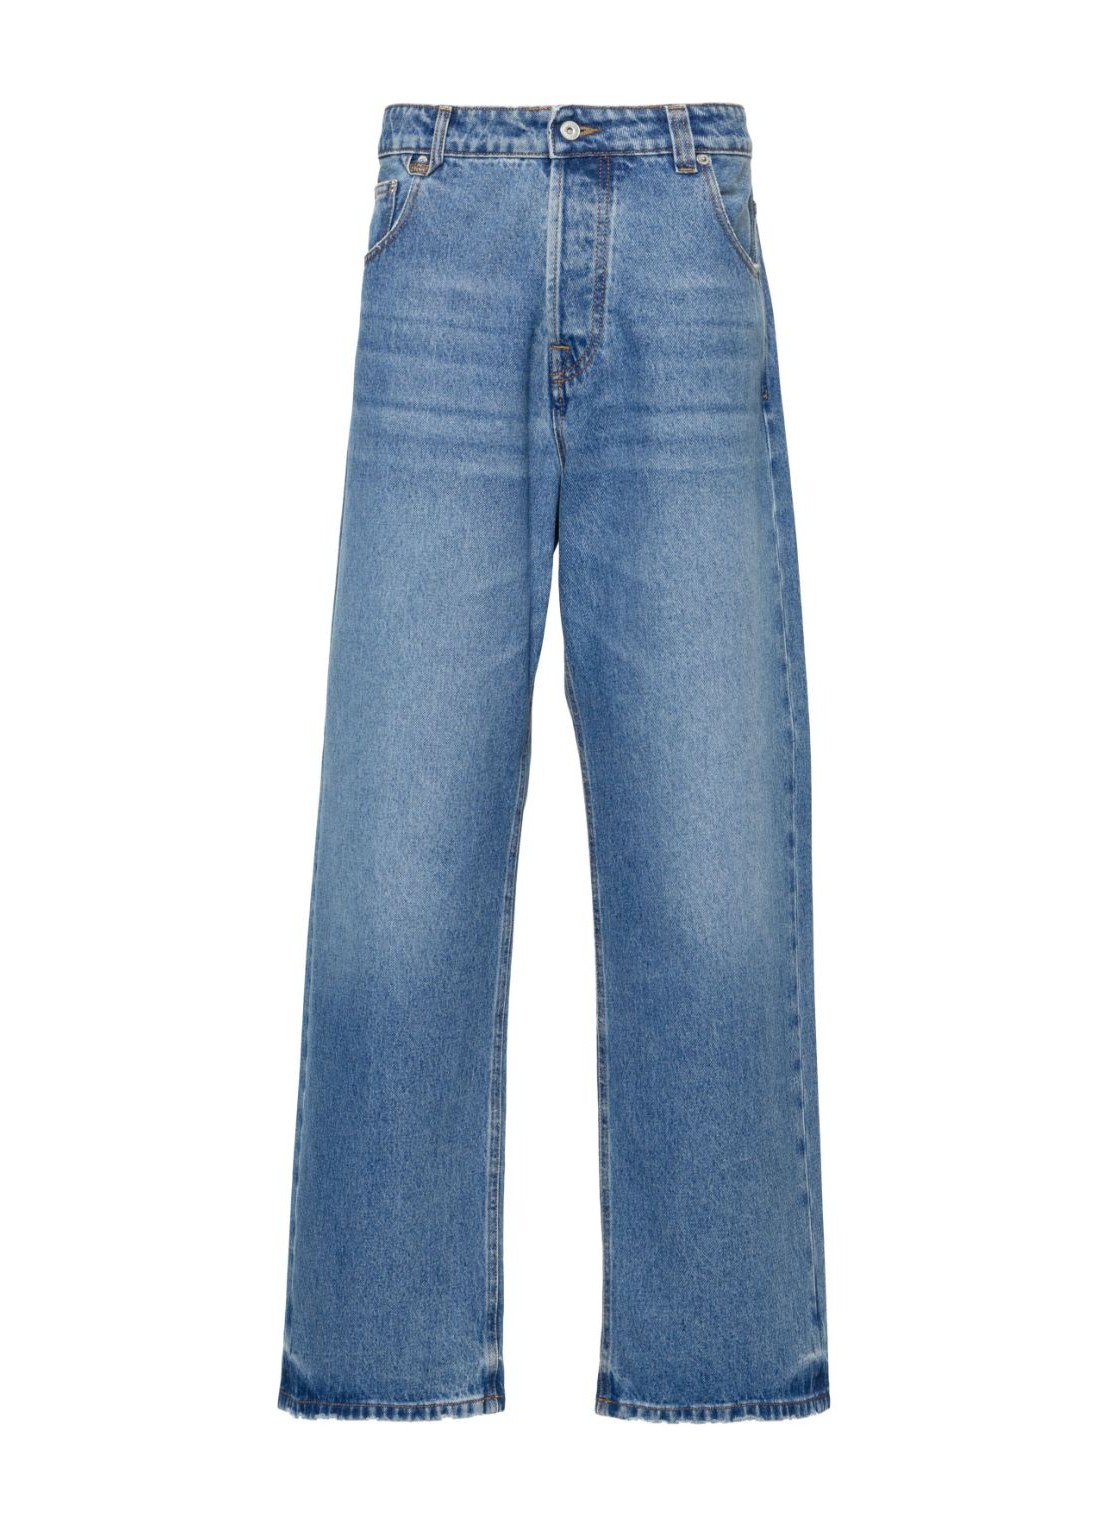 Pantalon jeans jacquemus denim man le de nA(r)mes large 24e245de0381513 33c talla 32
 